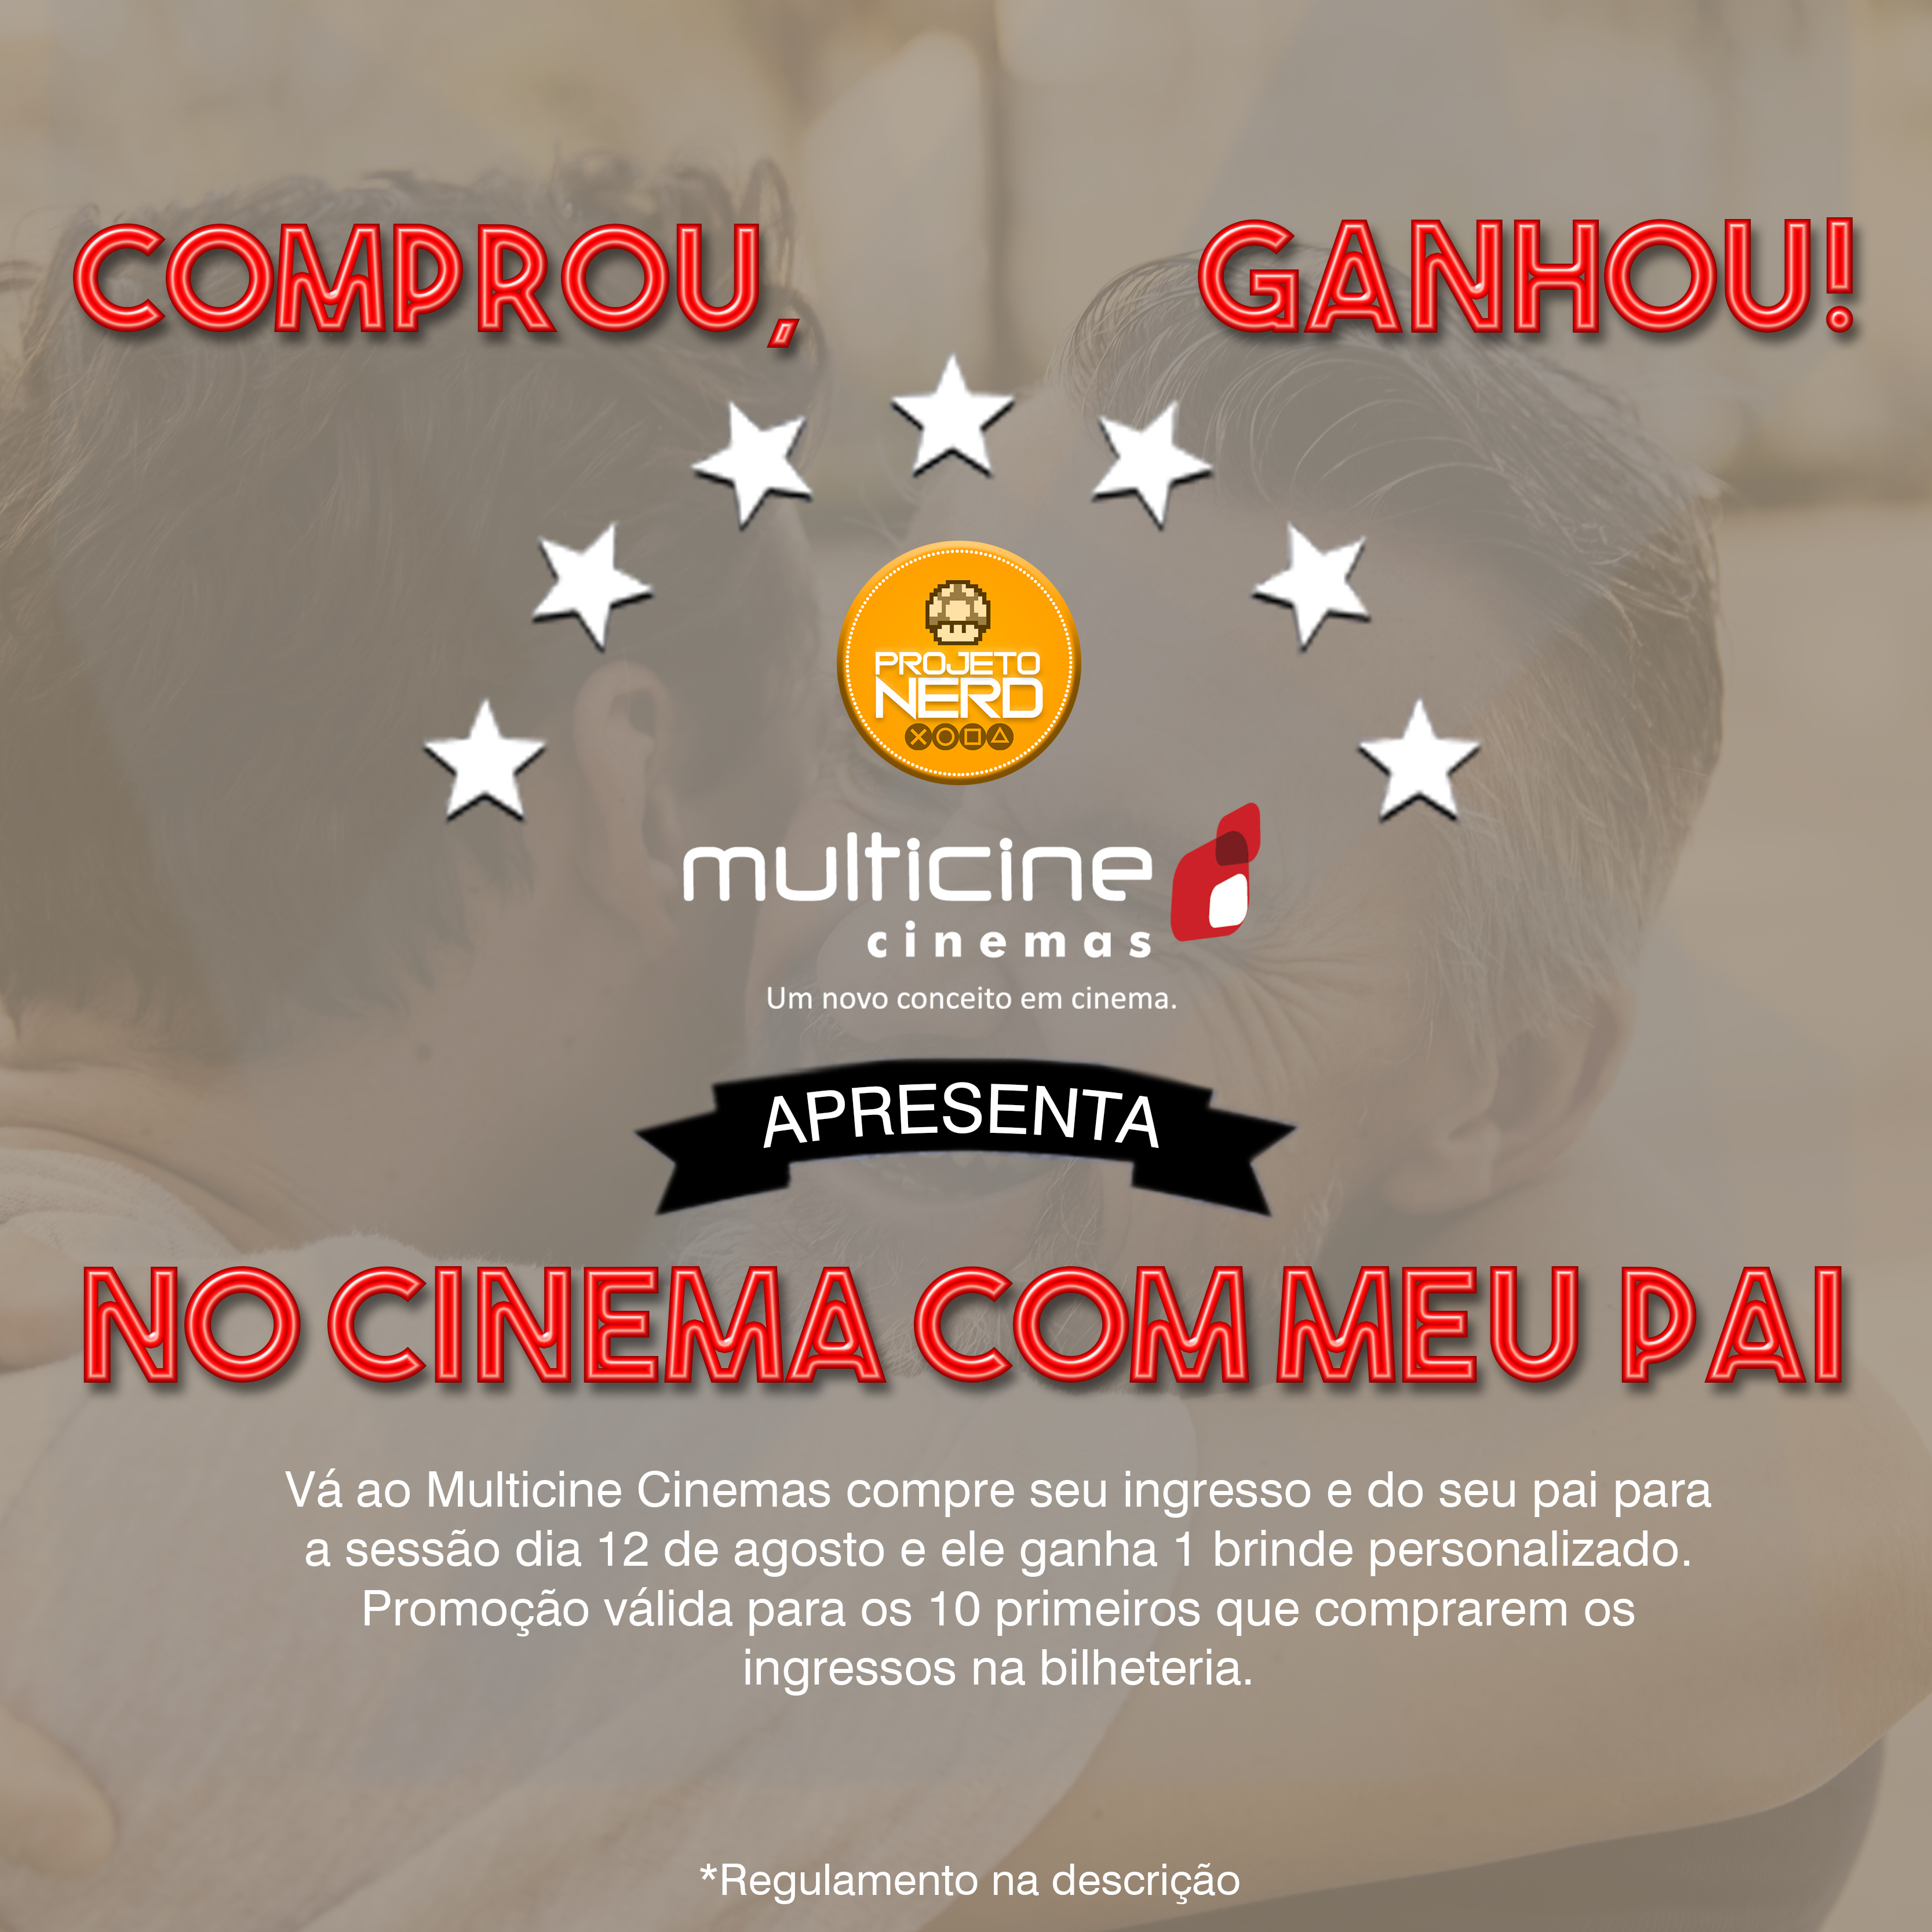 Multicine Cinemas